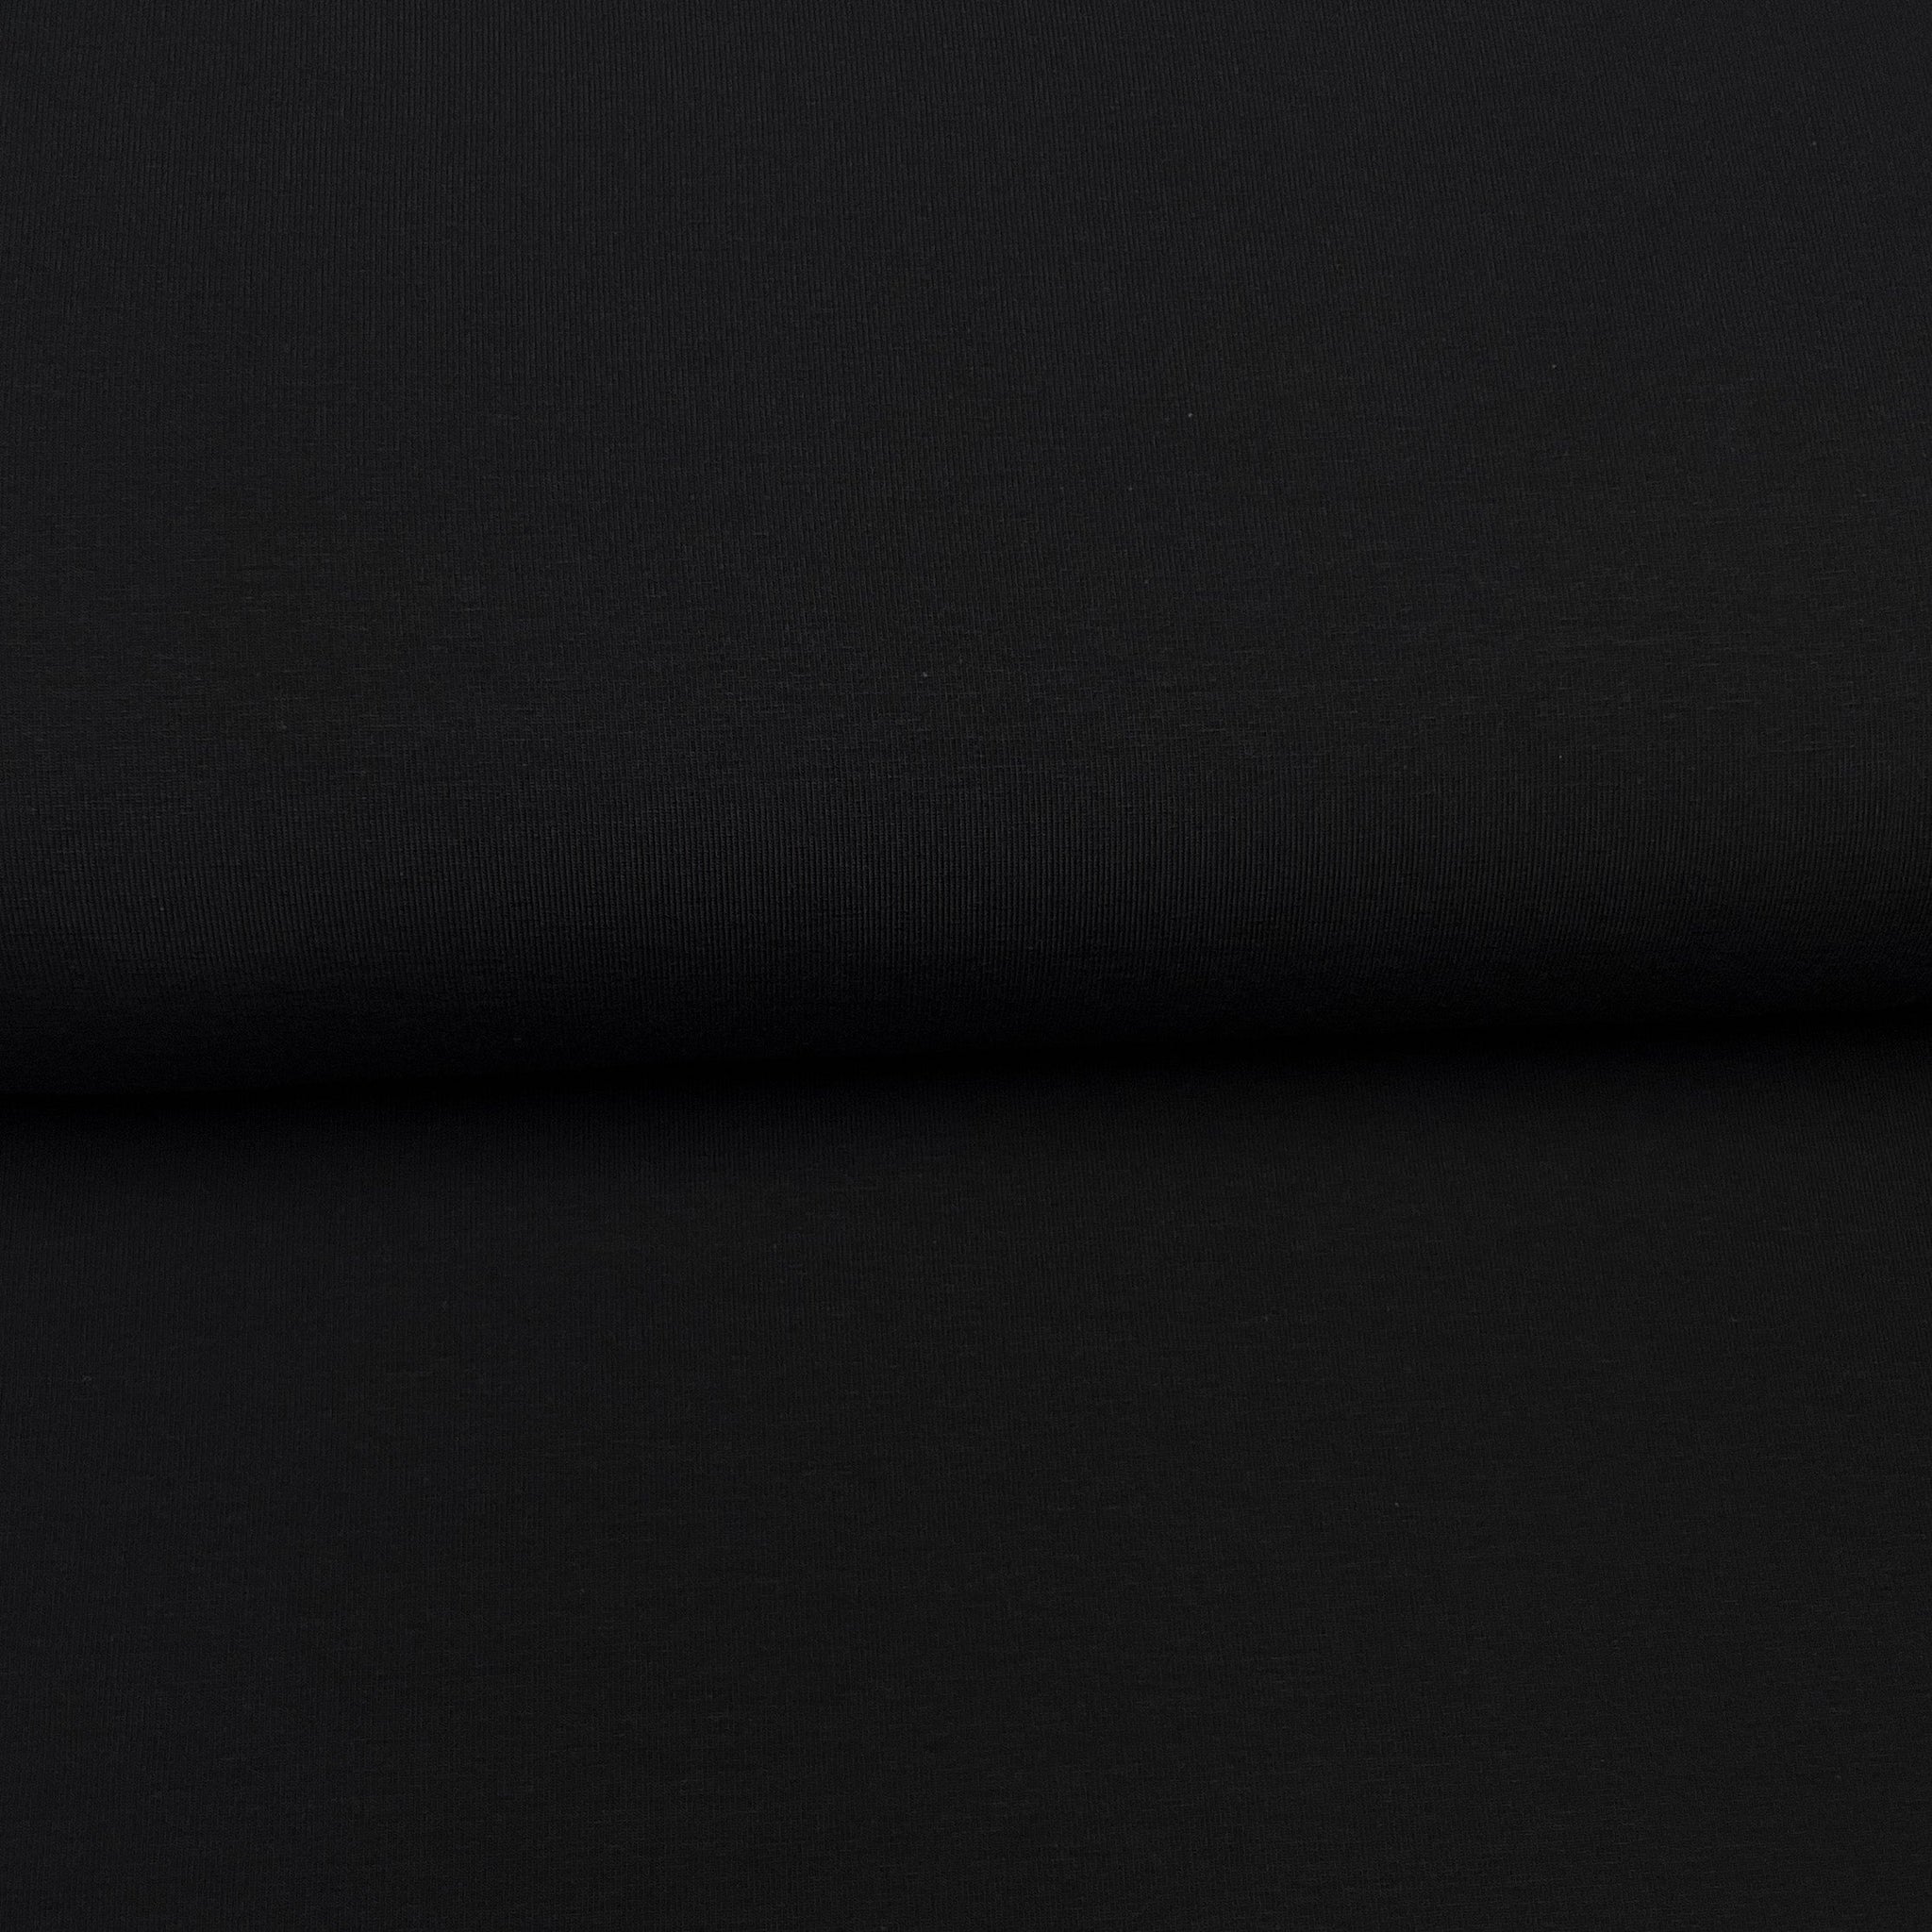 Fin de rouleau 32 cm - Noir - Jersey uni